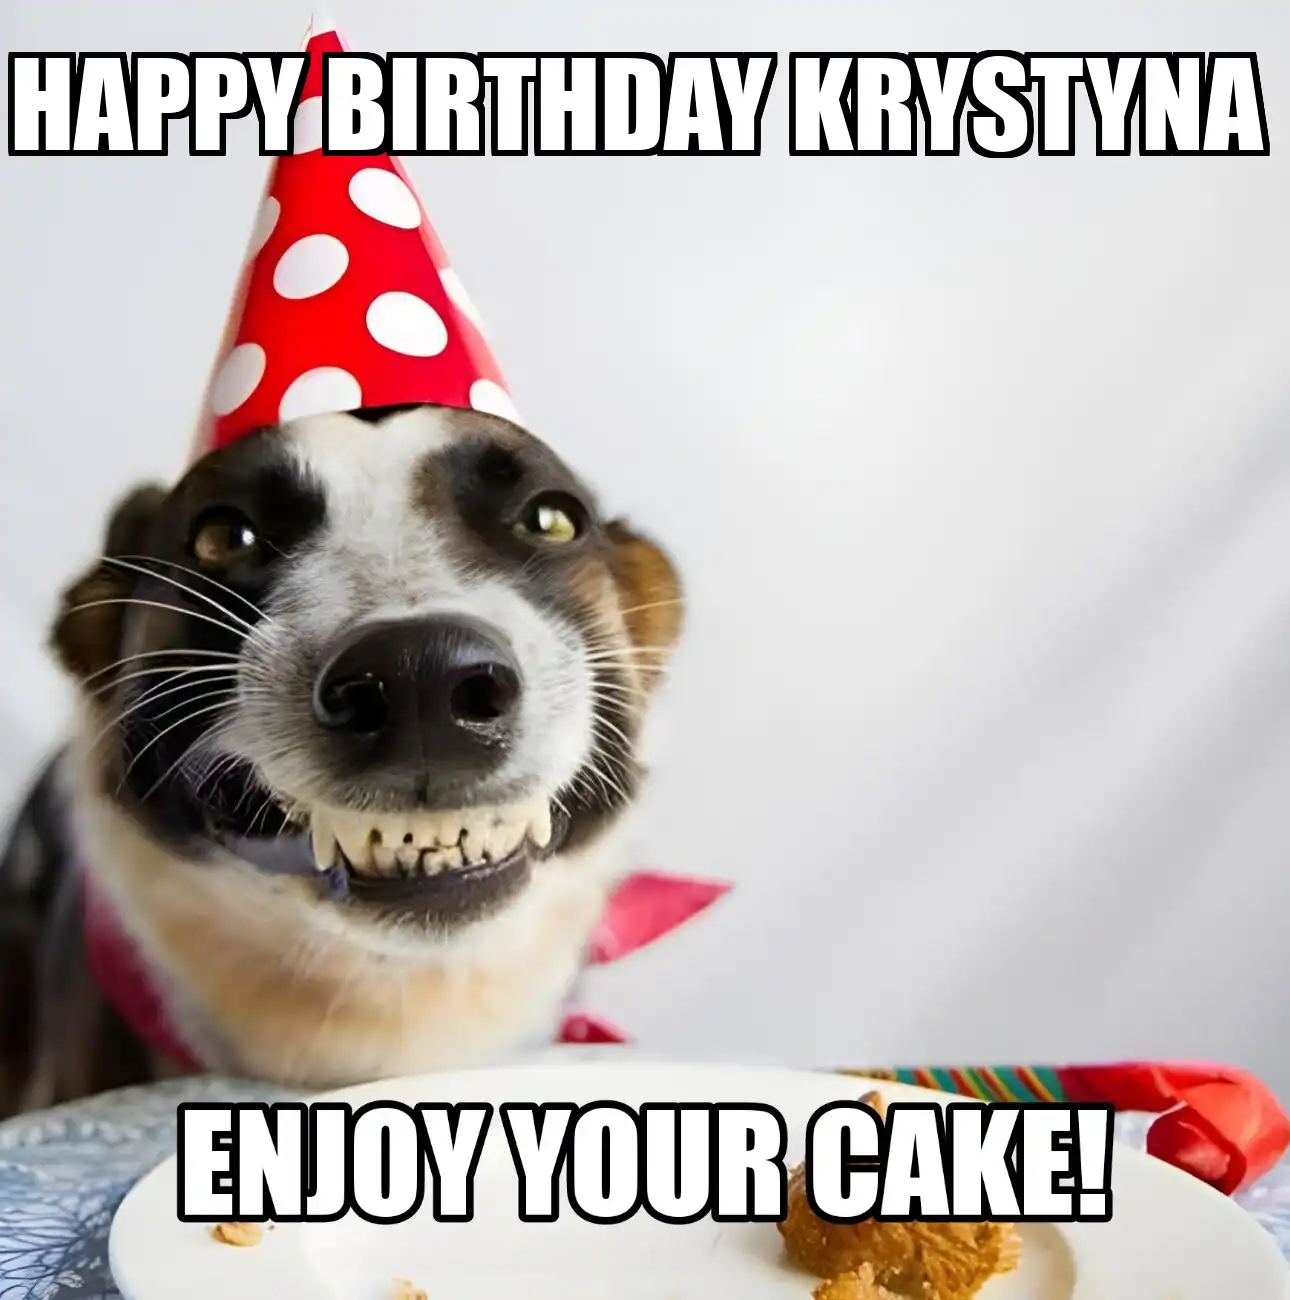 Happy Birthday Krystyna Enjoy Your Cake Dog Meme